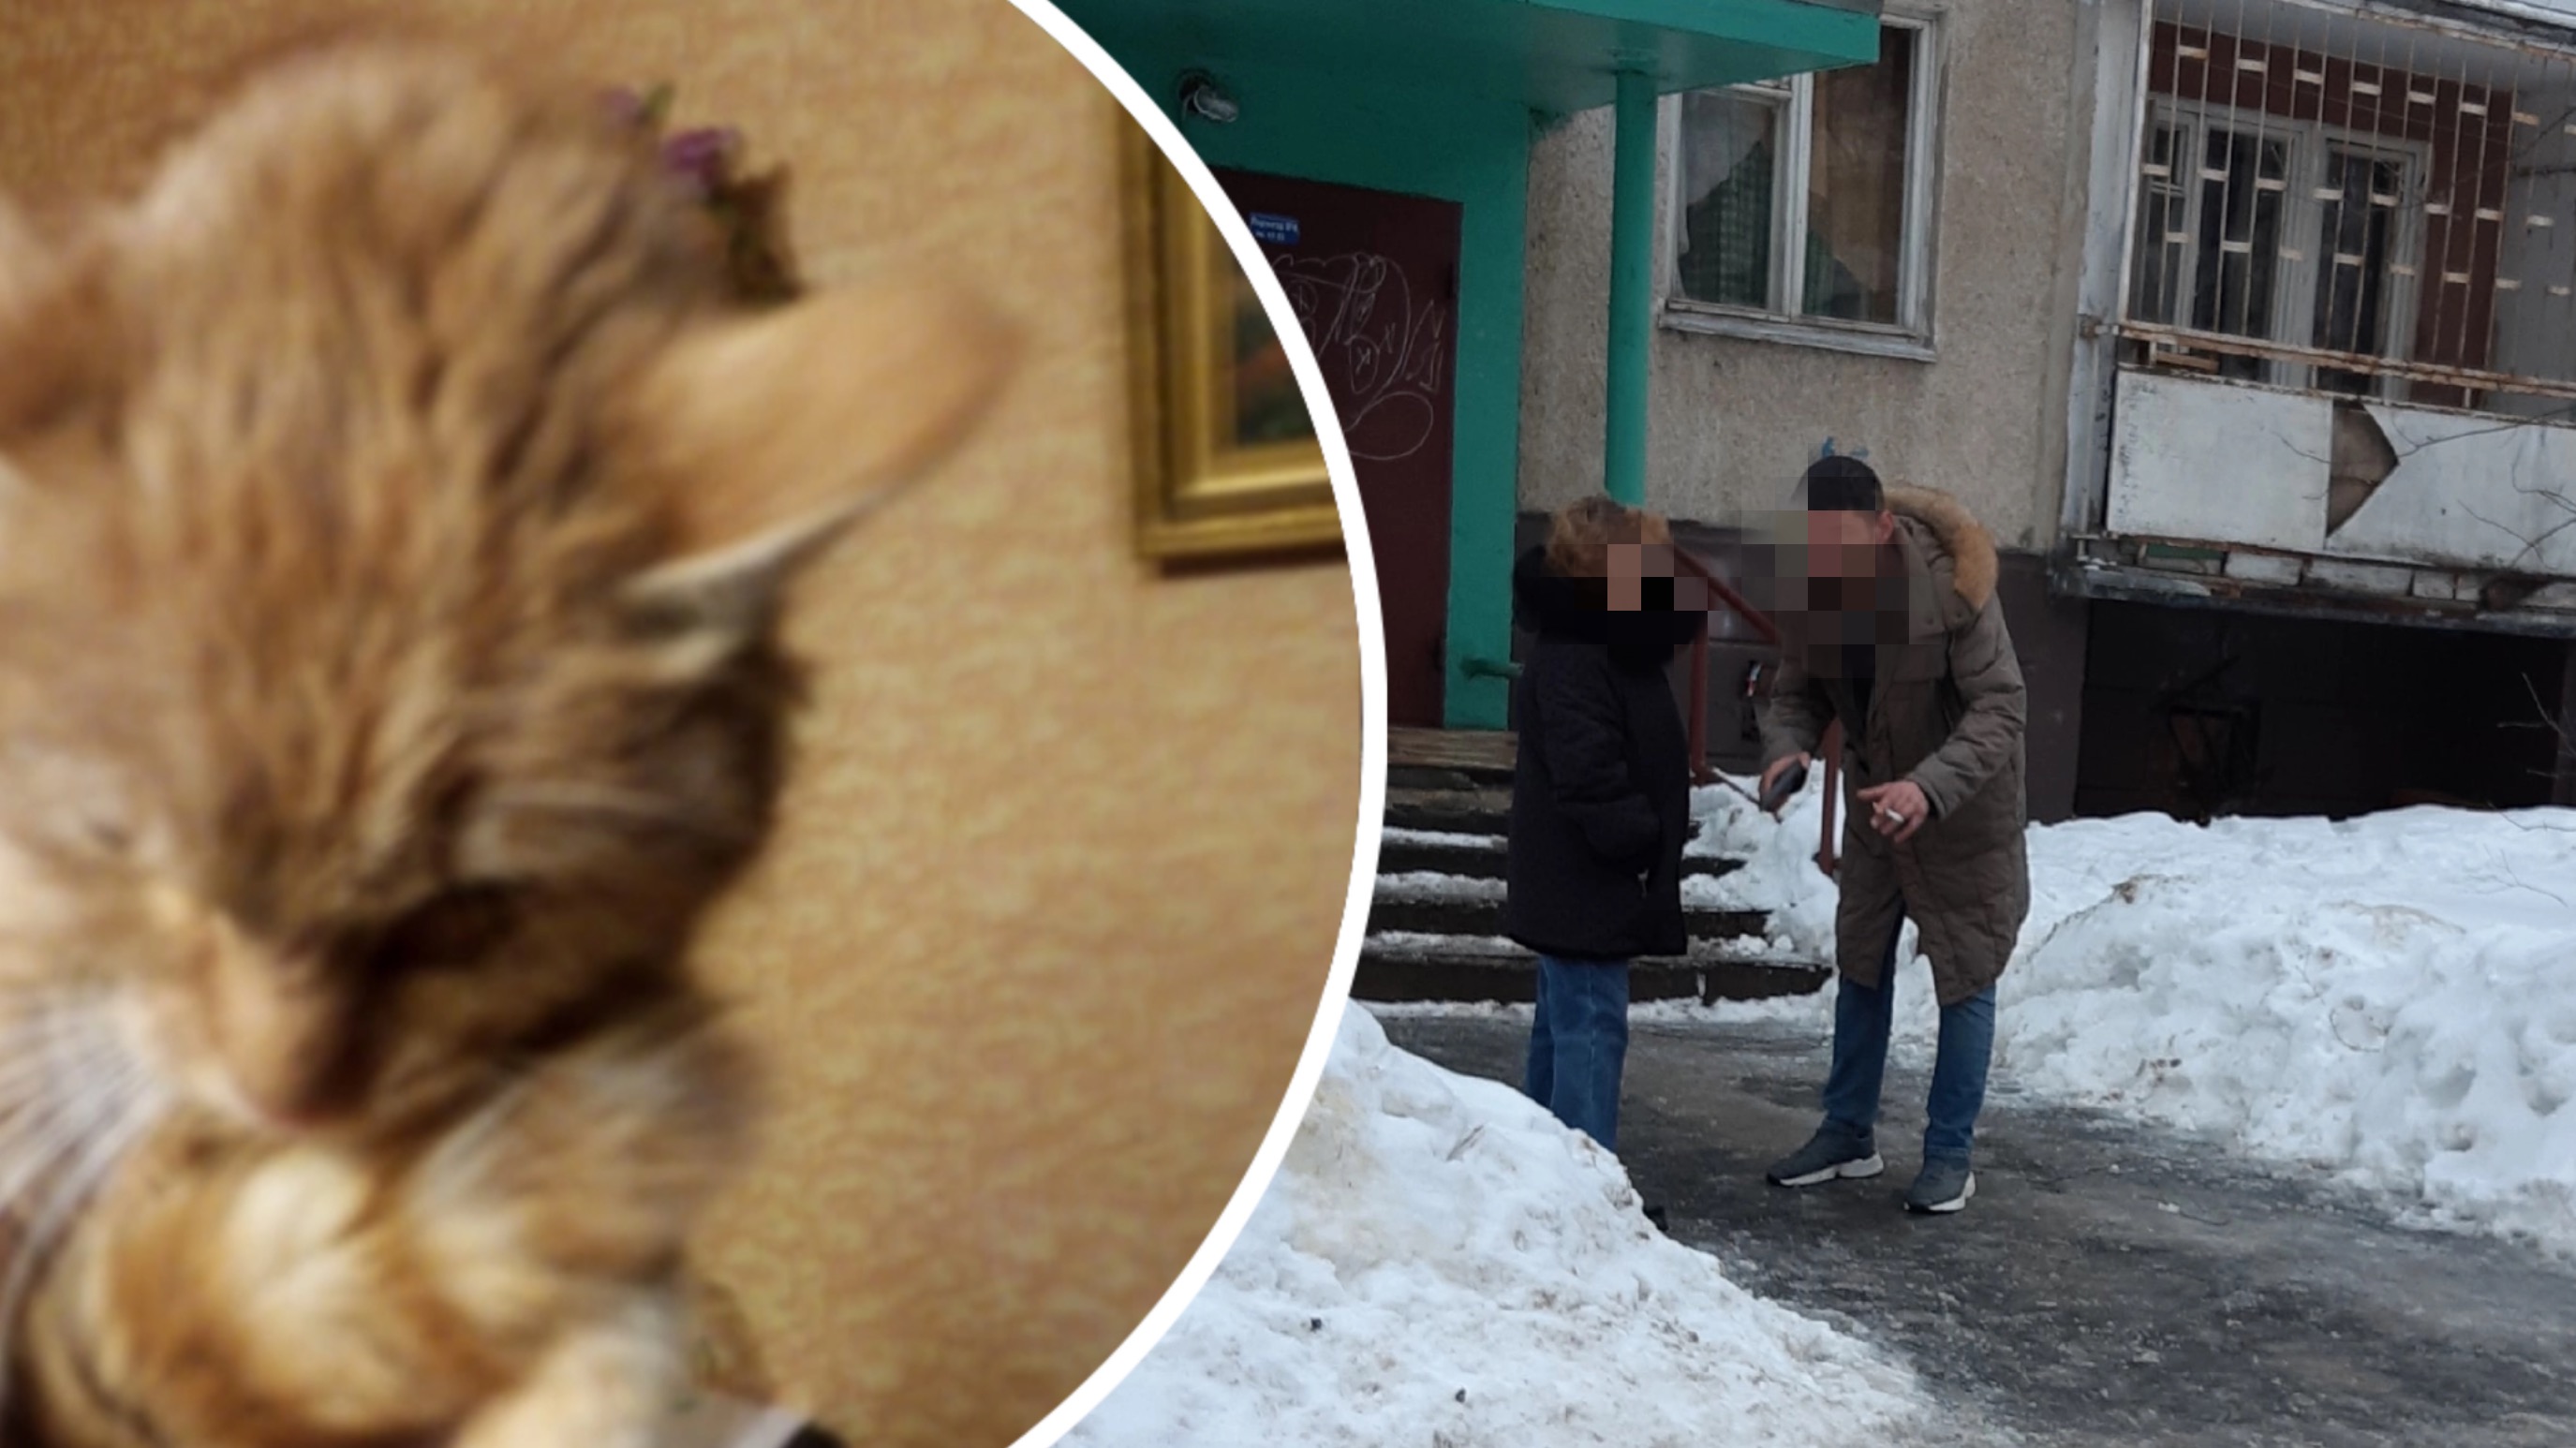 «Угрожал пистолетом»: ярославцы вырвали измученного кота из рук жестокого хозяина 